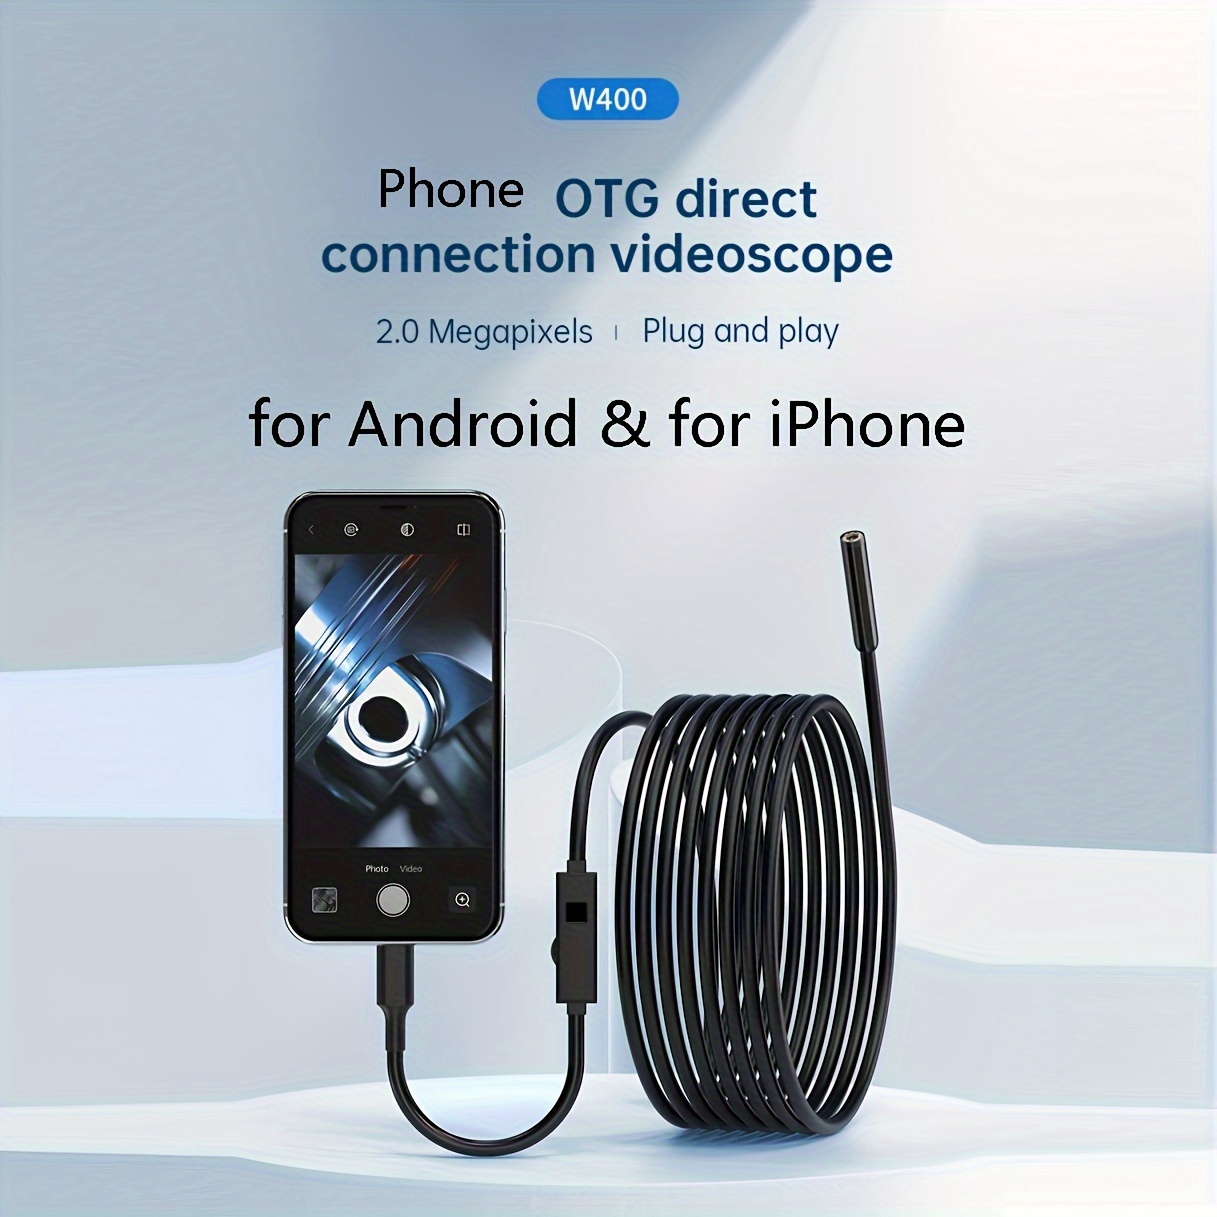 Camera Endoscopique pour Smartphone Micro-USB/USB Android Fil 5m Endoscope  Inspection HD (NOIR) - Accessoire photo, vidéo pour téléphone mobile -  Achat & prix